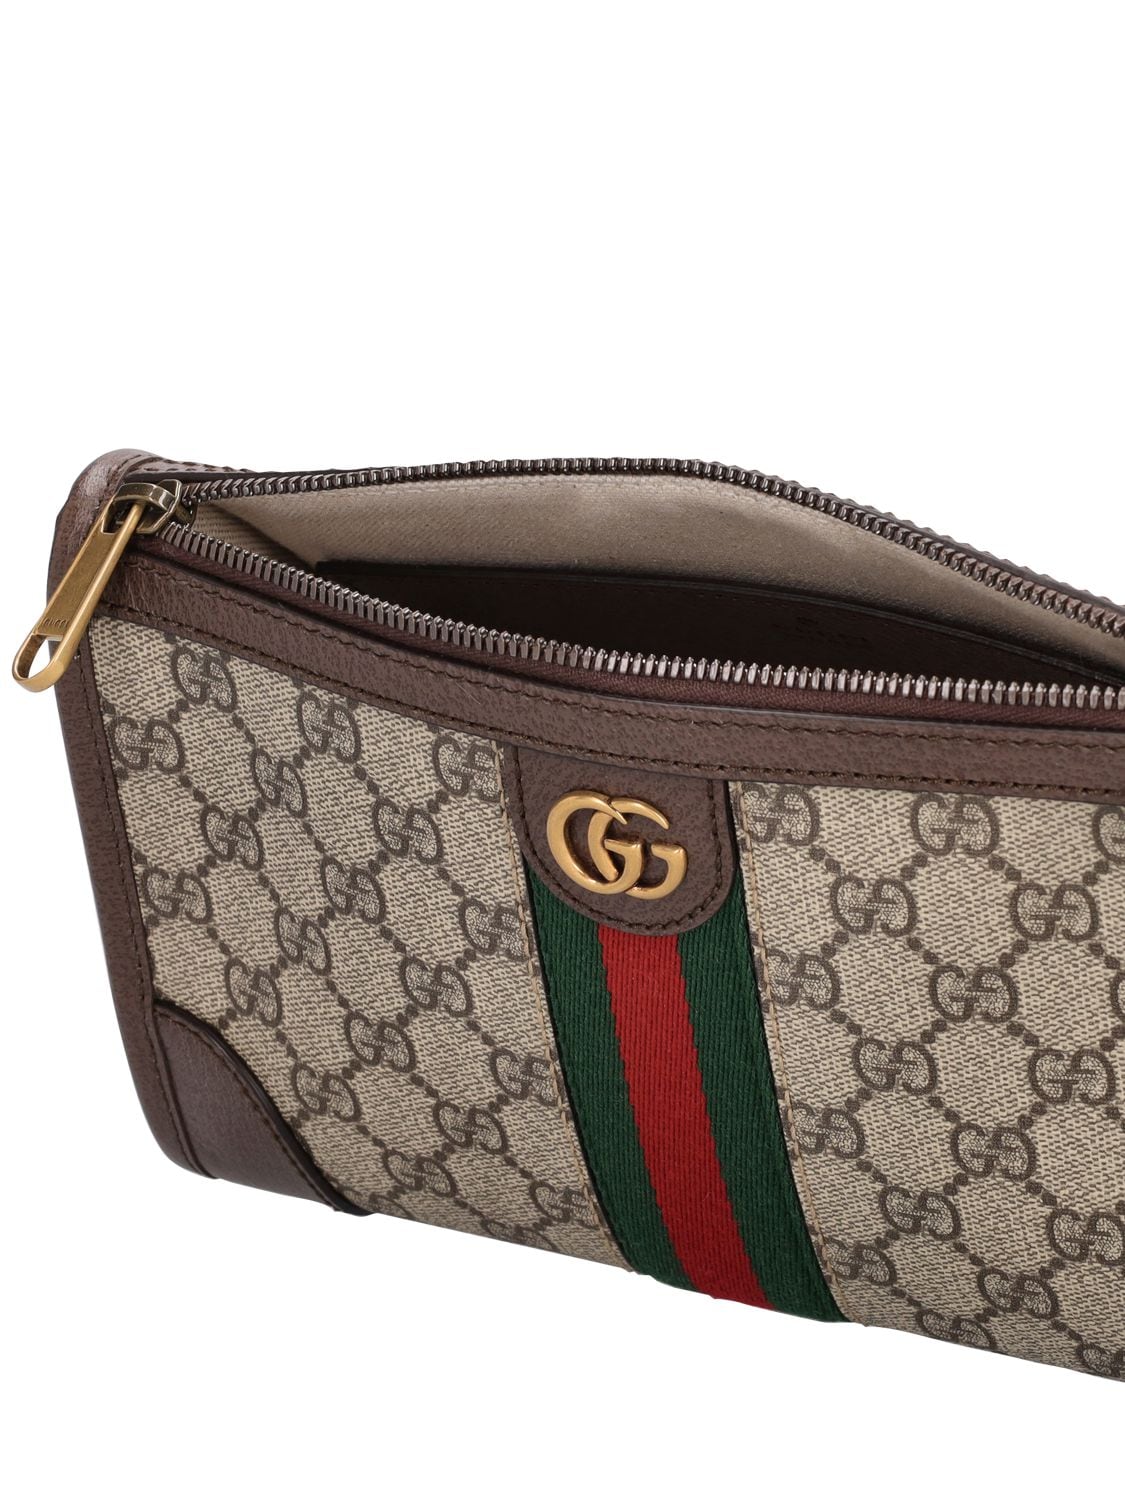 Shop Gucci Gg Supreme Messenger Bag In Beige,ebony